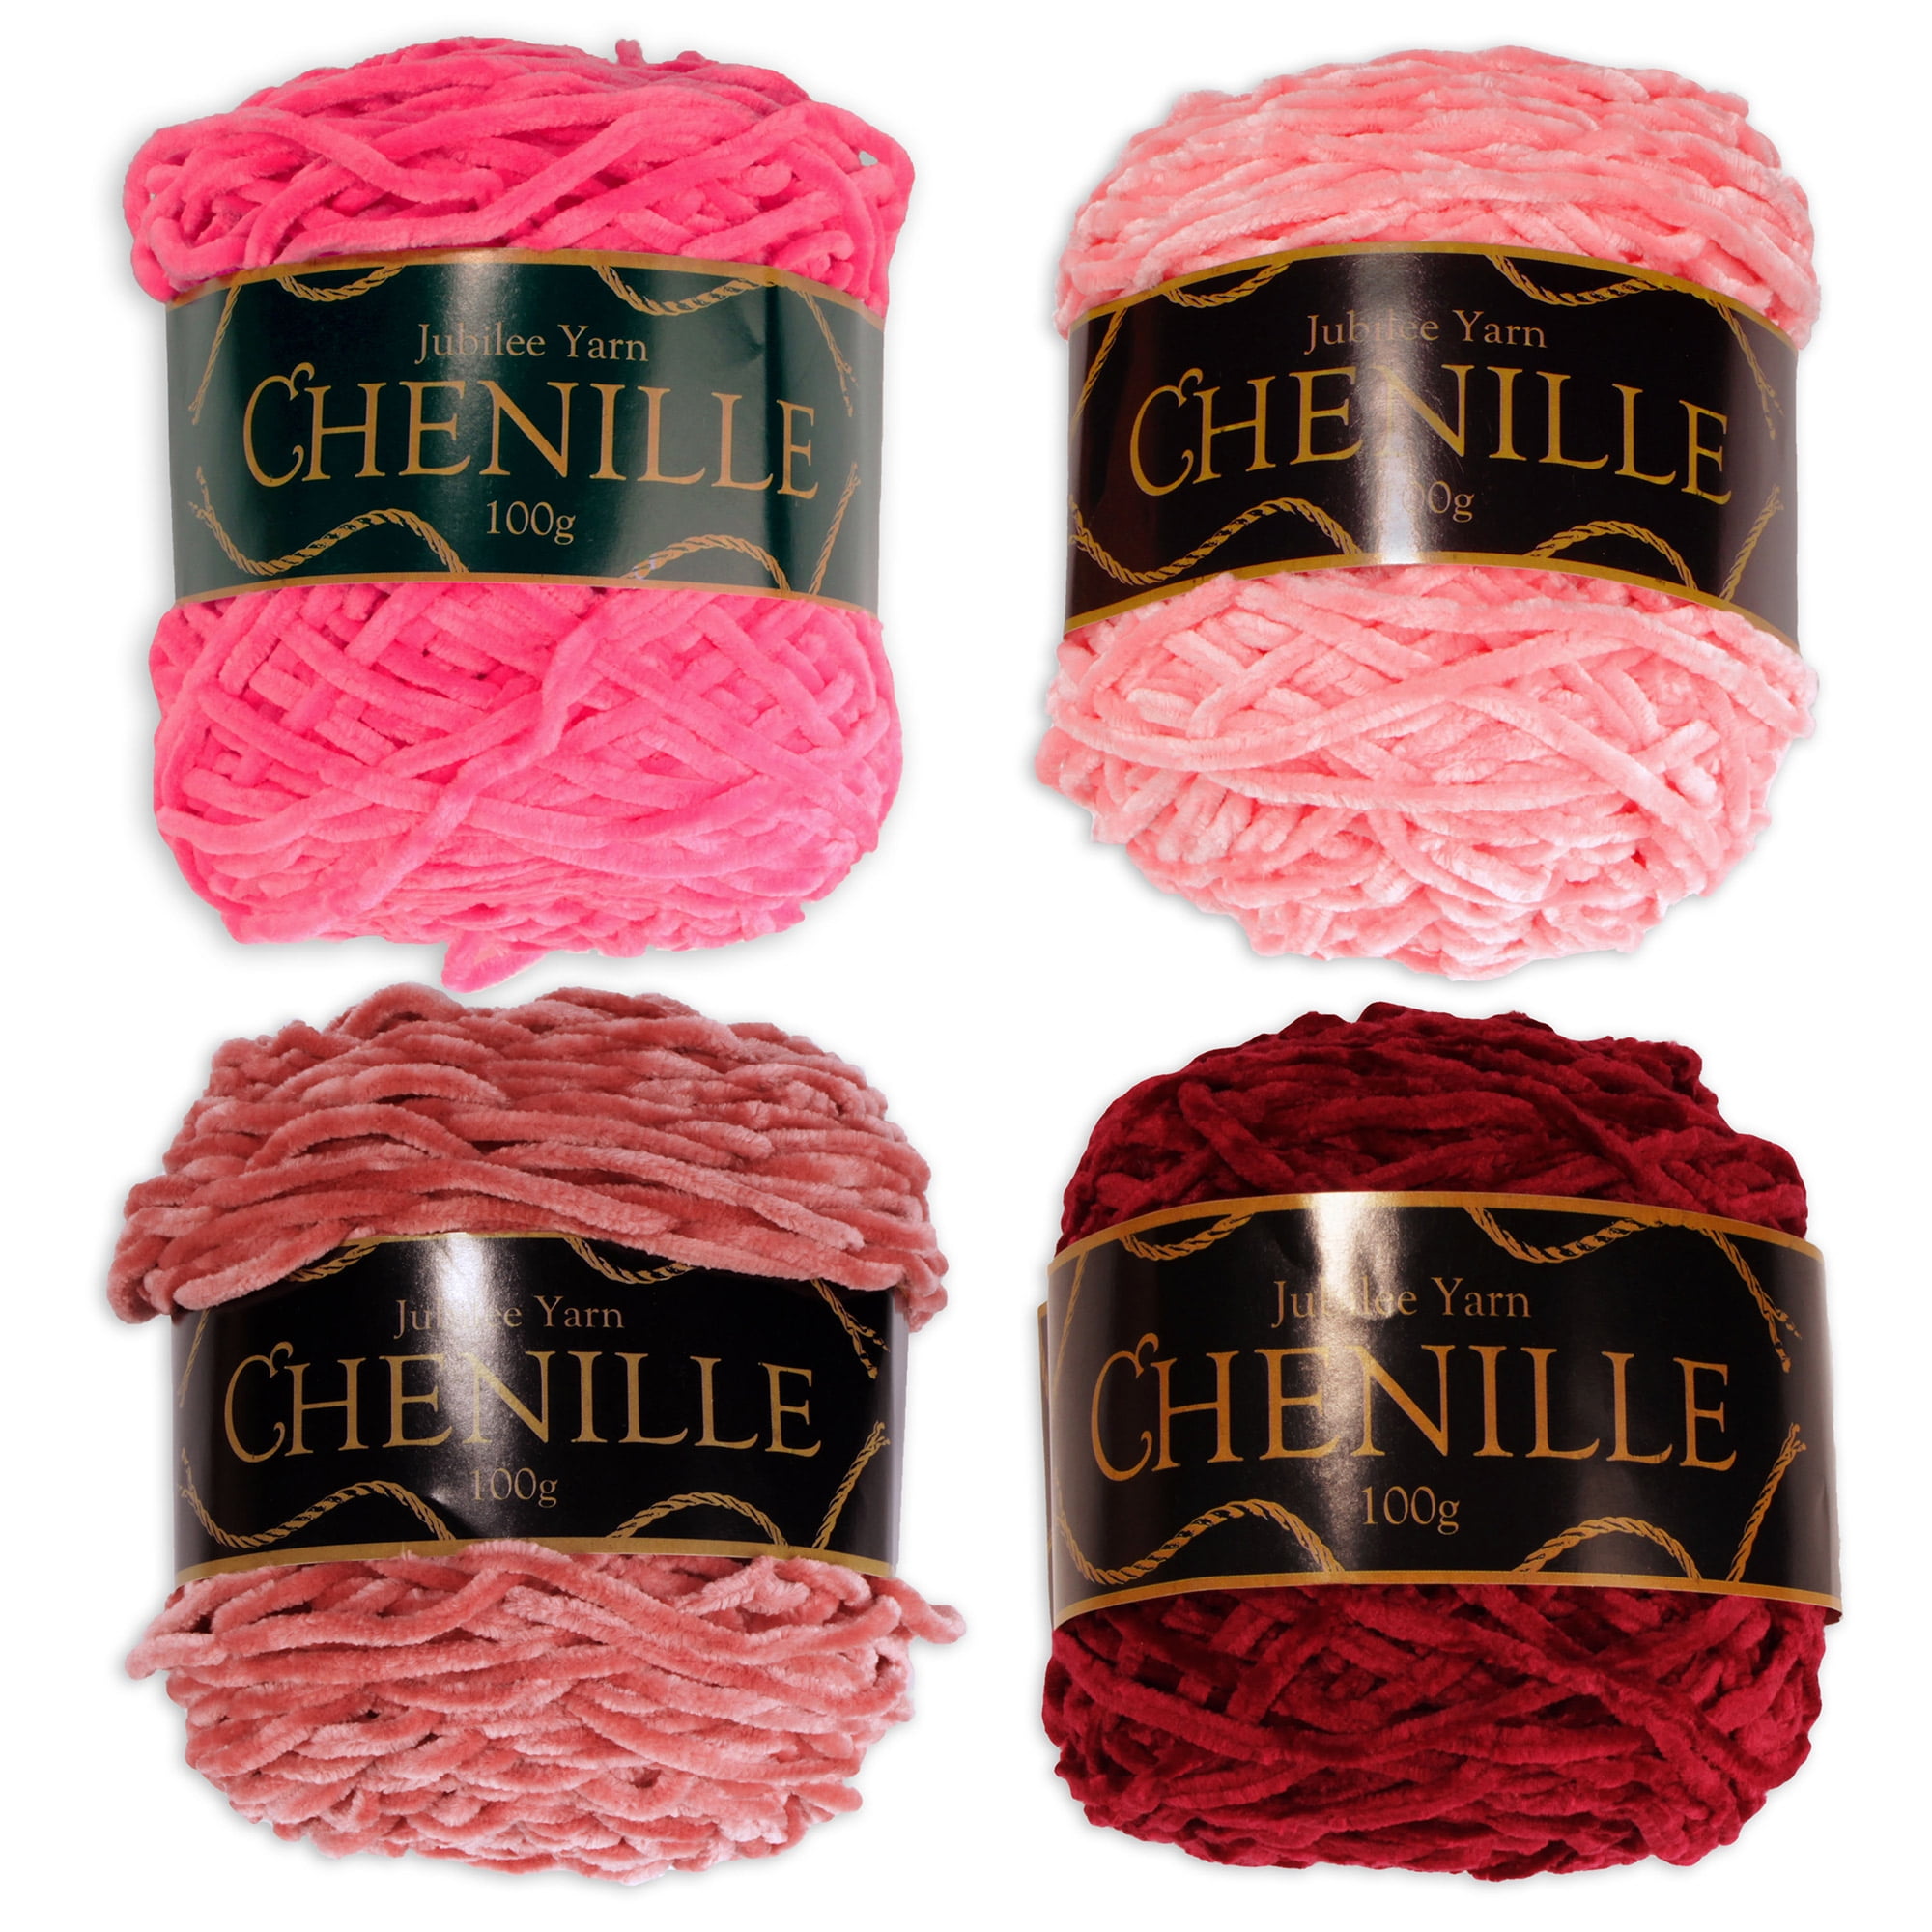 Chenille Yarn - Worsted Weight Yarn - 100g/skein - Shades of Pink - 4 Skeins